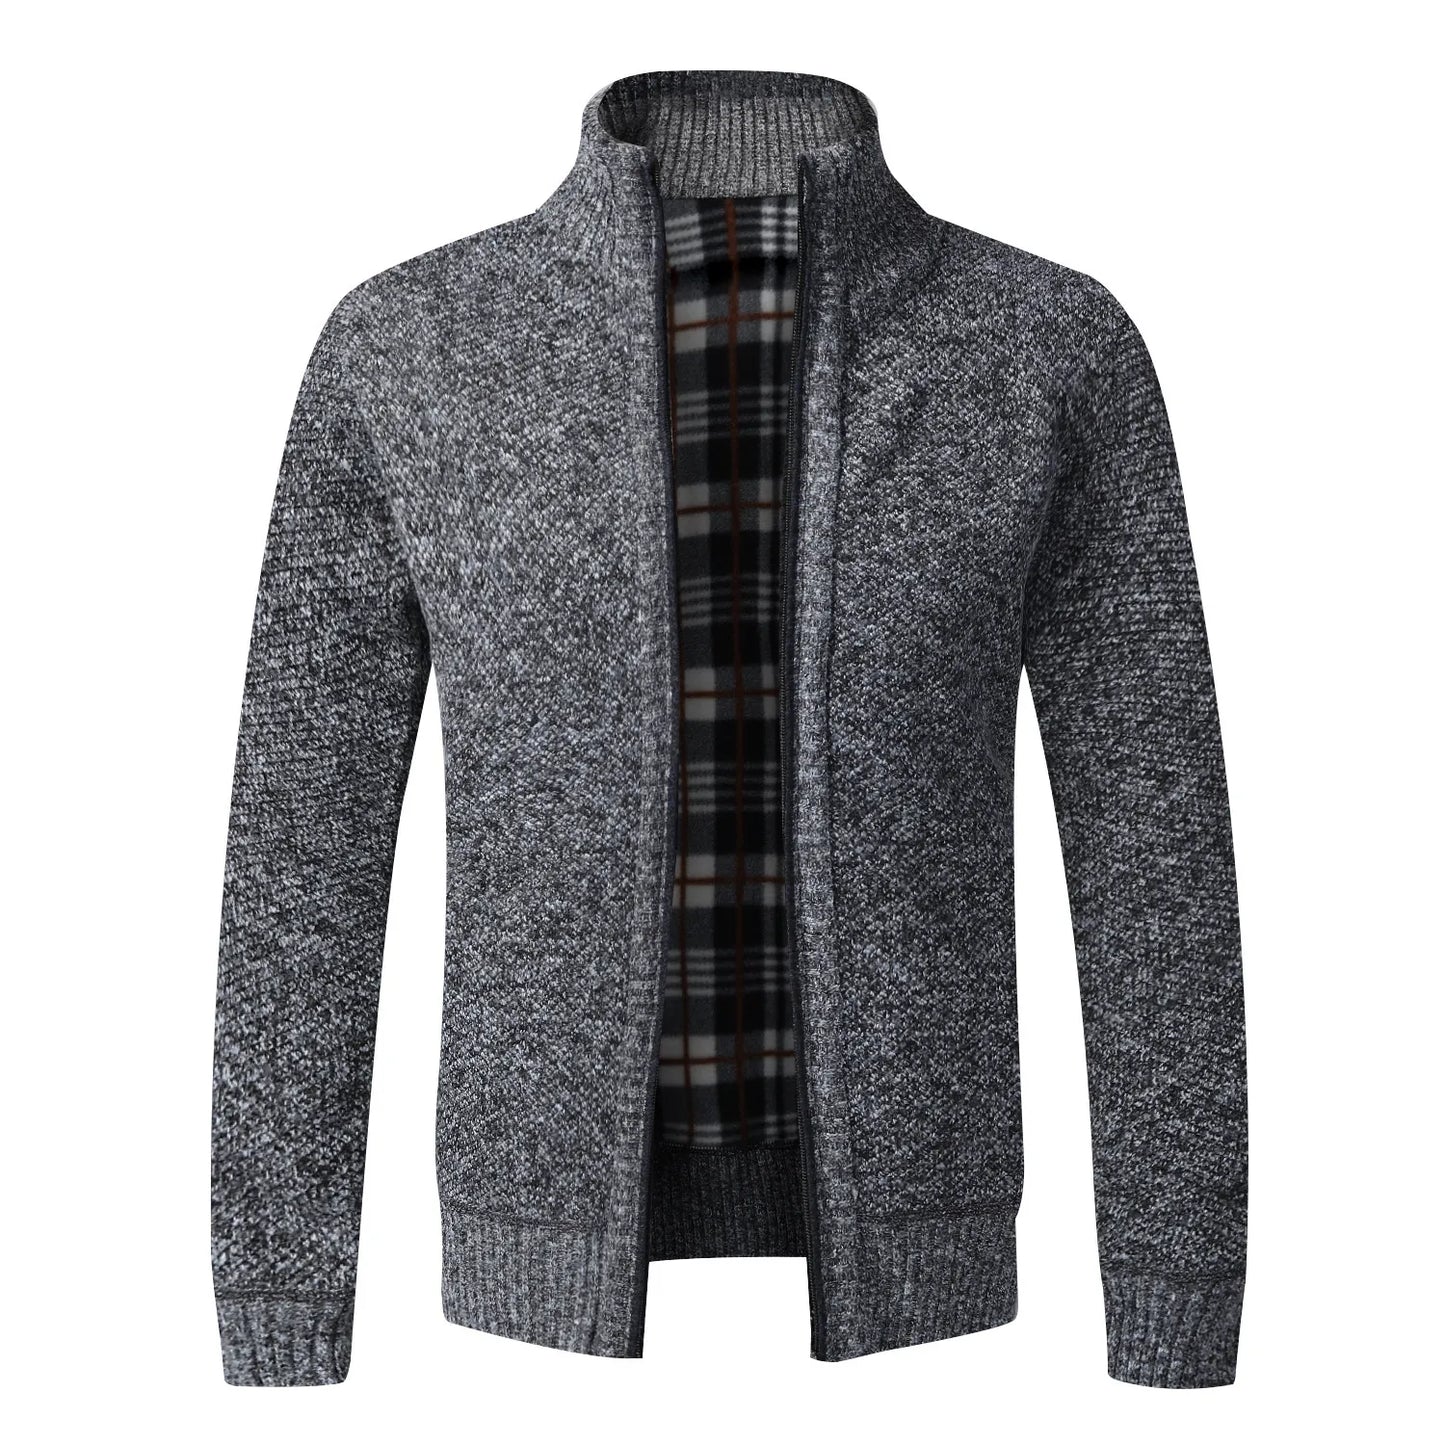 TEEK - Warm Knitted Zipper Sweater Jacket JACKET theteekdotcom dark grey US XS | Tag M 